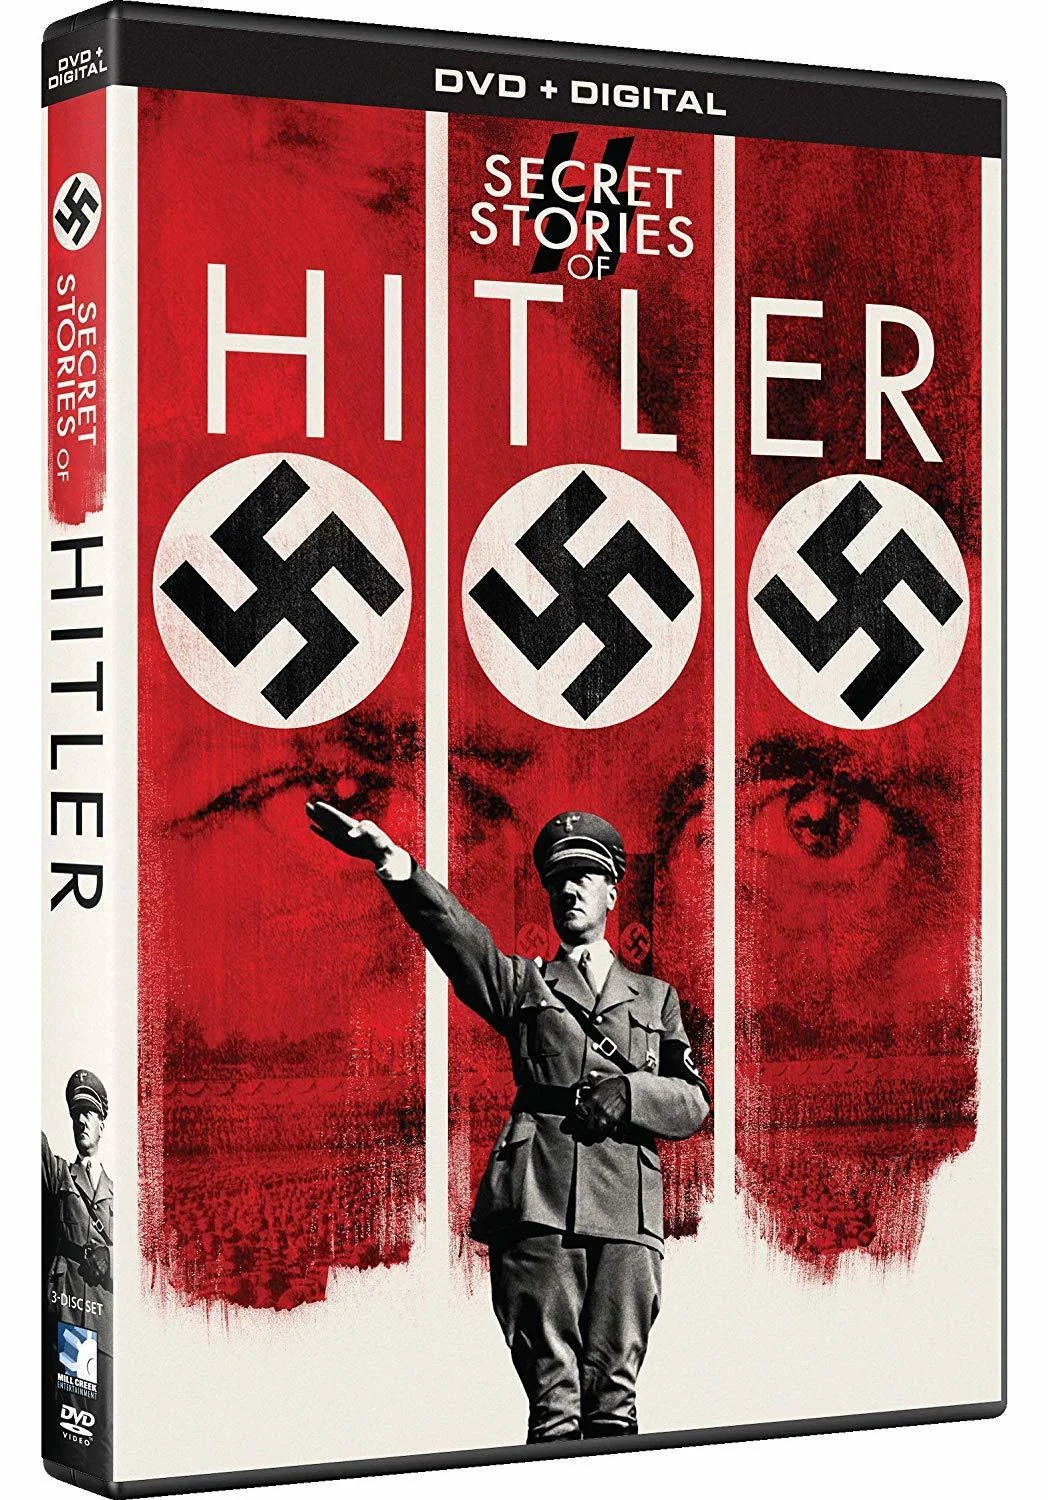 Secret Stories of Hitler (DVD) on MovieShack